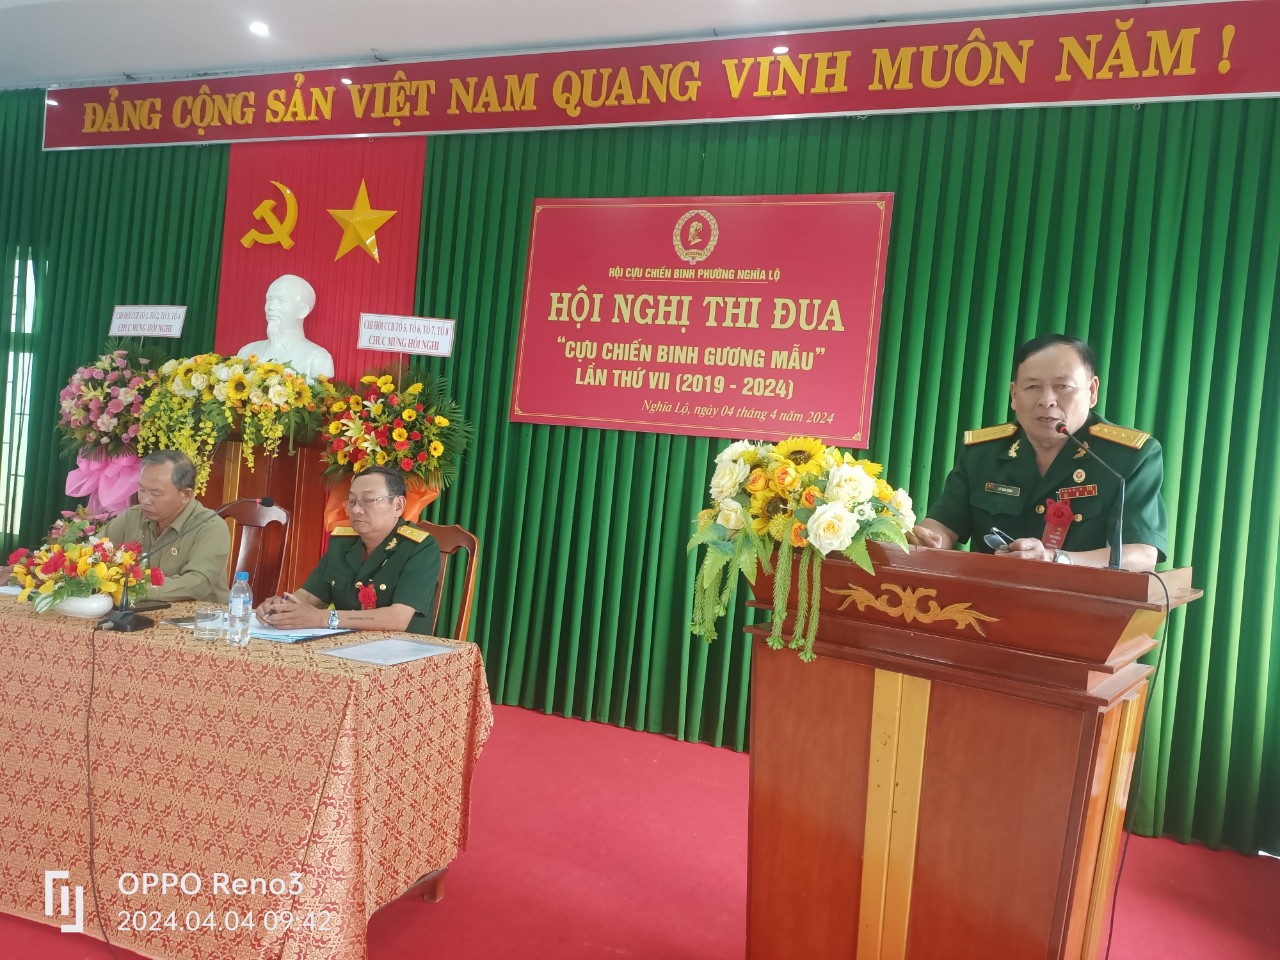 Đồng chí lê văn Dũng, Chủ tịch hội CCB thành phố Quảng Ngãi phát biểu chỉ đạo hội nghị